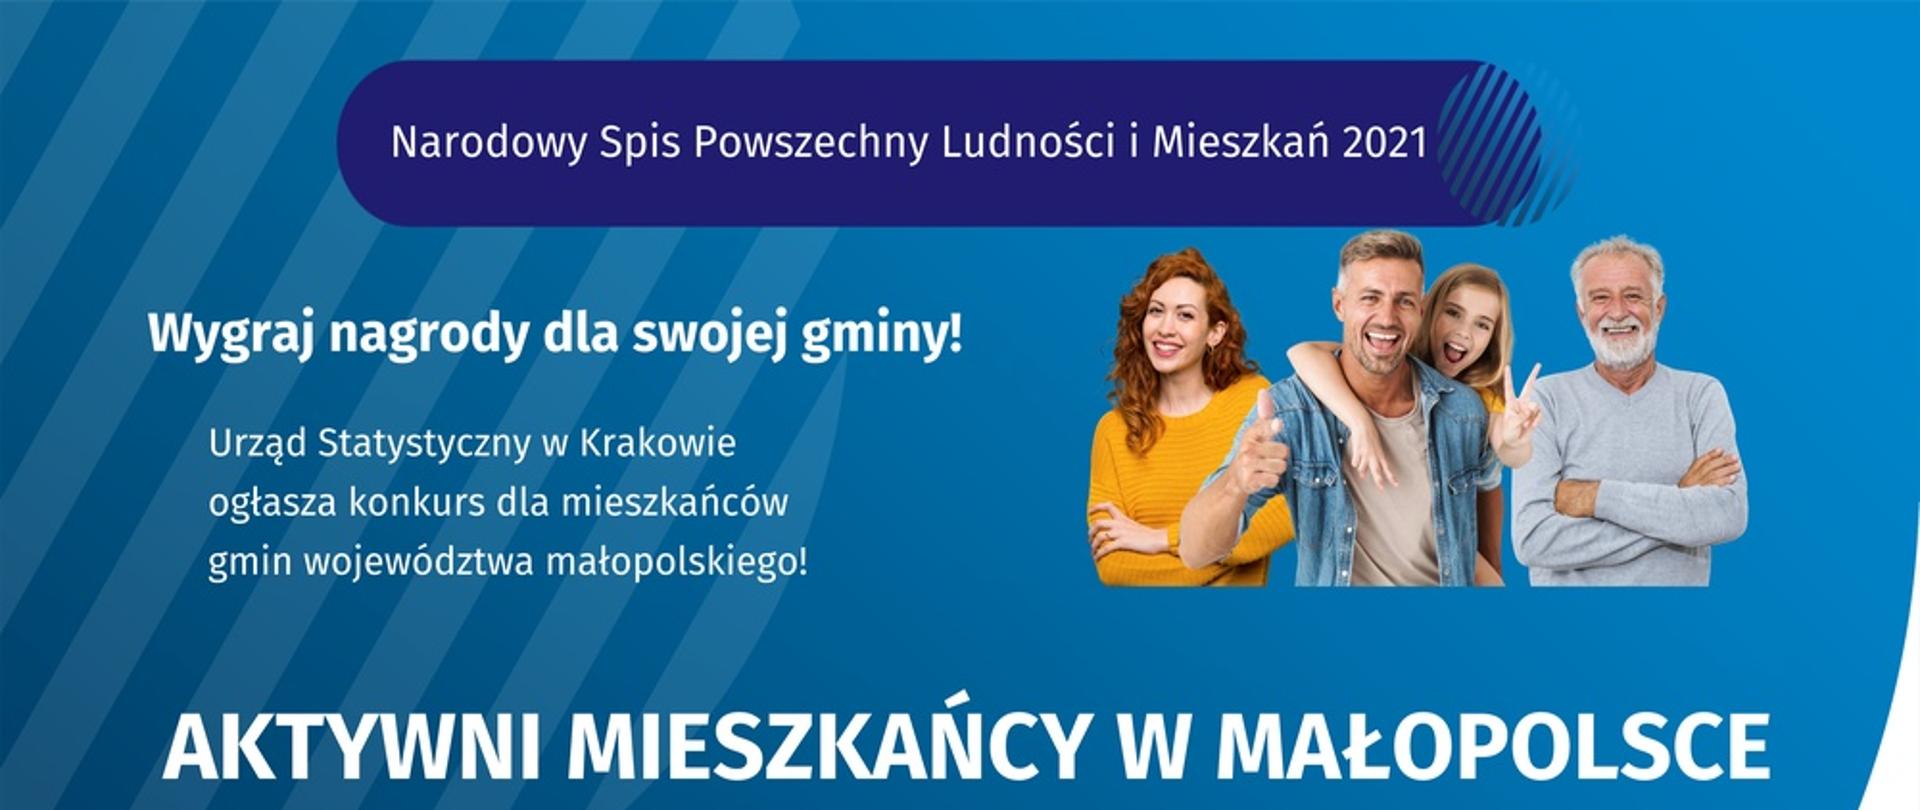 Plakat informacyjny Głównego Urządu Statystycznego w Krakowie który zachęca do udziału w Narodowy Spisie Powszechnym Ludności i Mieszkań 2021 .Konkursy nazywa się "Aktywni mieszkańcy w Małopolsce"